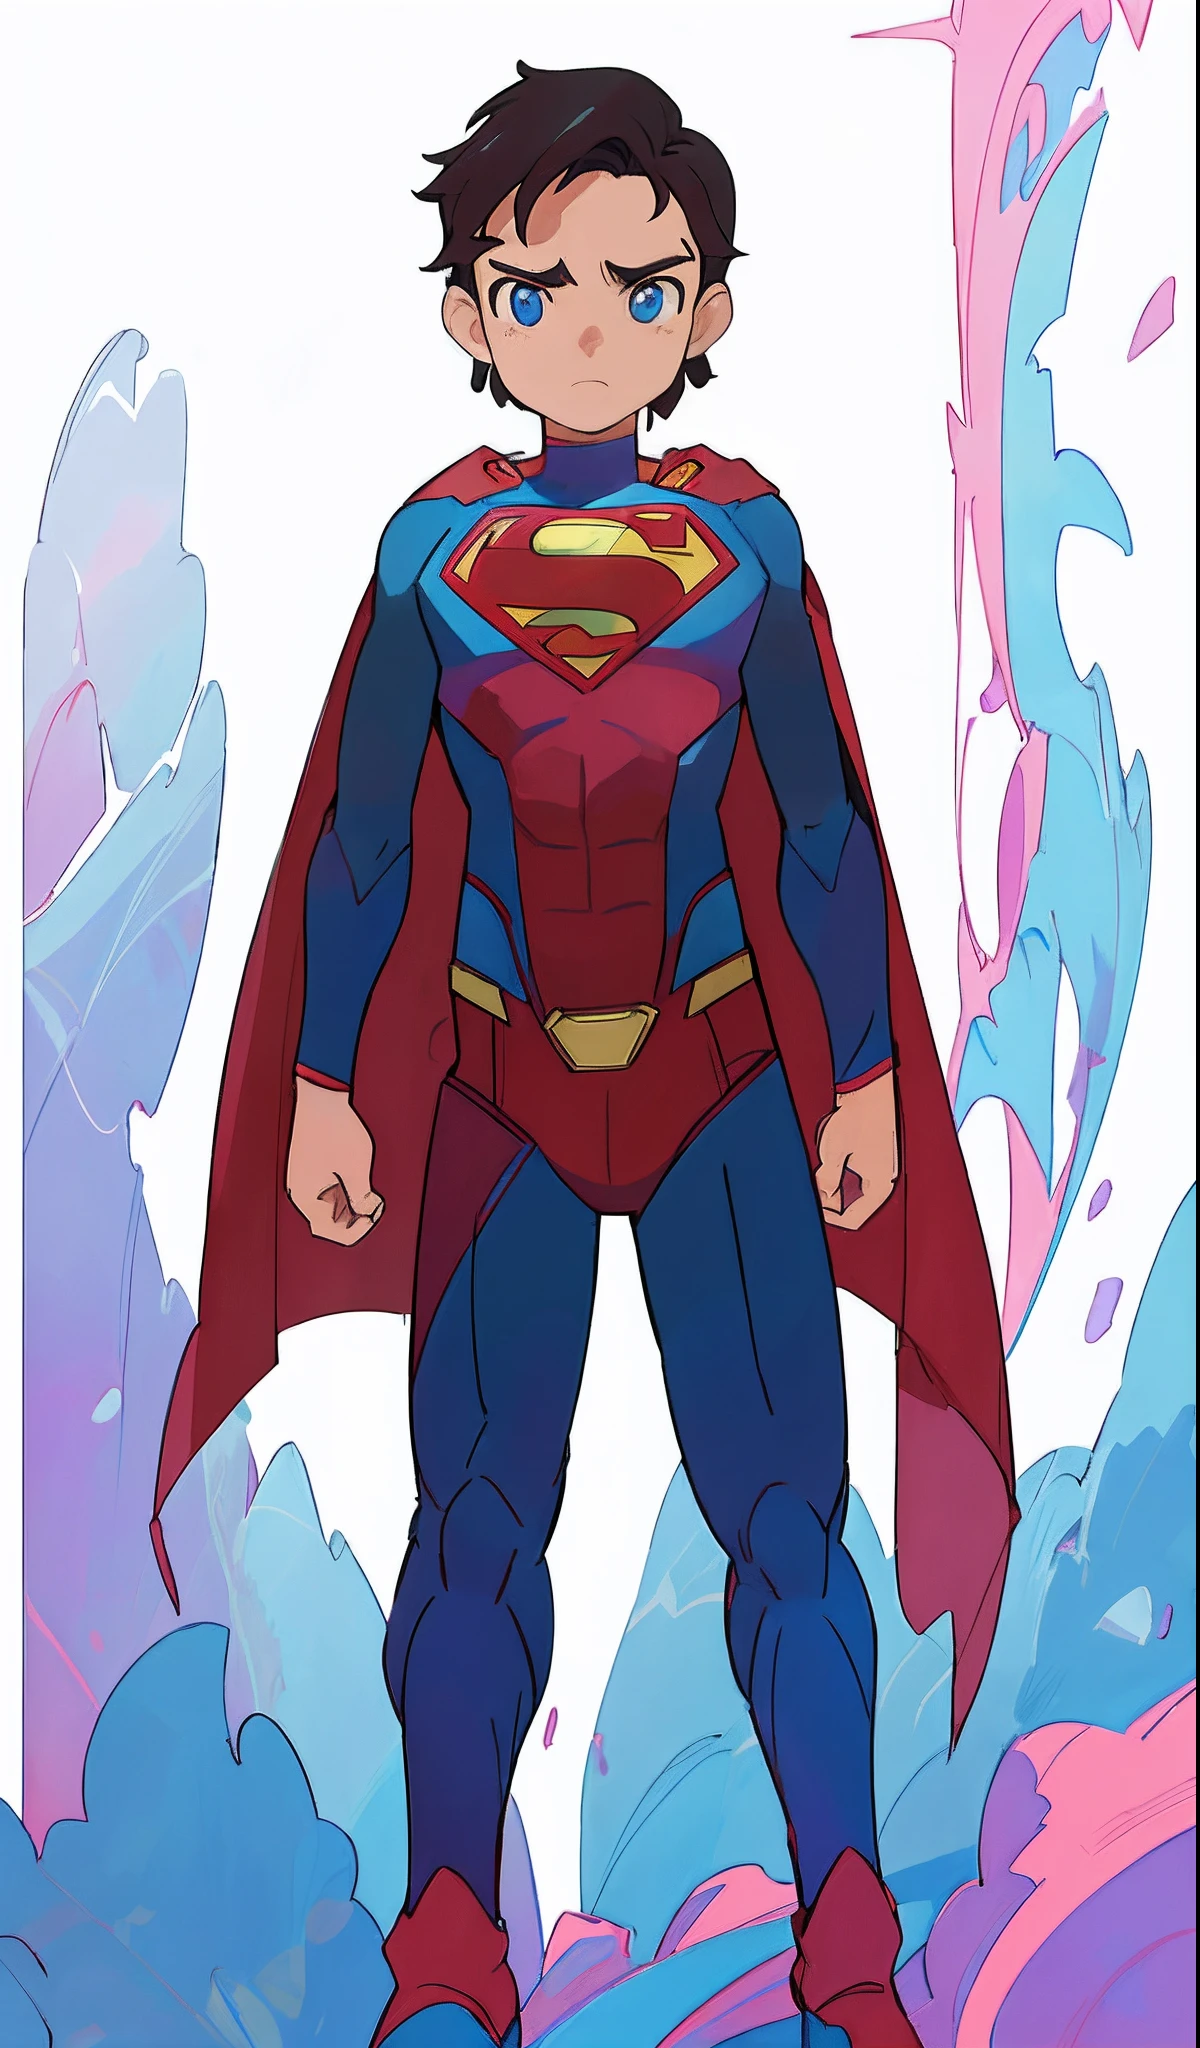 超人 is standing in front of a background of blue and pink, DC漫畫藝術風格, 官方藝術, 官方概念艺术, 全身概念, 超人, 無文本的, inspired 作者：维克多·莫斯克拉, 全新服装概念设计, 作者：维克多·莫斯克拉, DC漫畫風格, 數位彩色, 靈感來自亞當·達裡奧·基爾, 乾淨的線條和顏色, 超人 pose, 官方同人畫